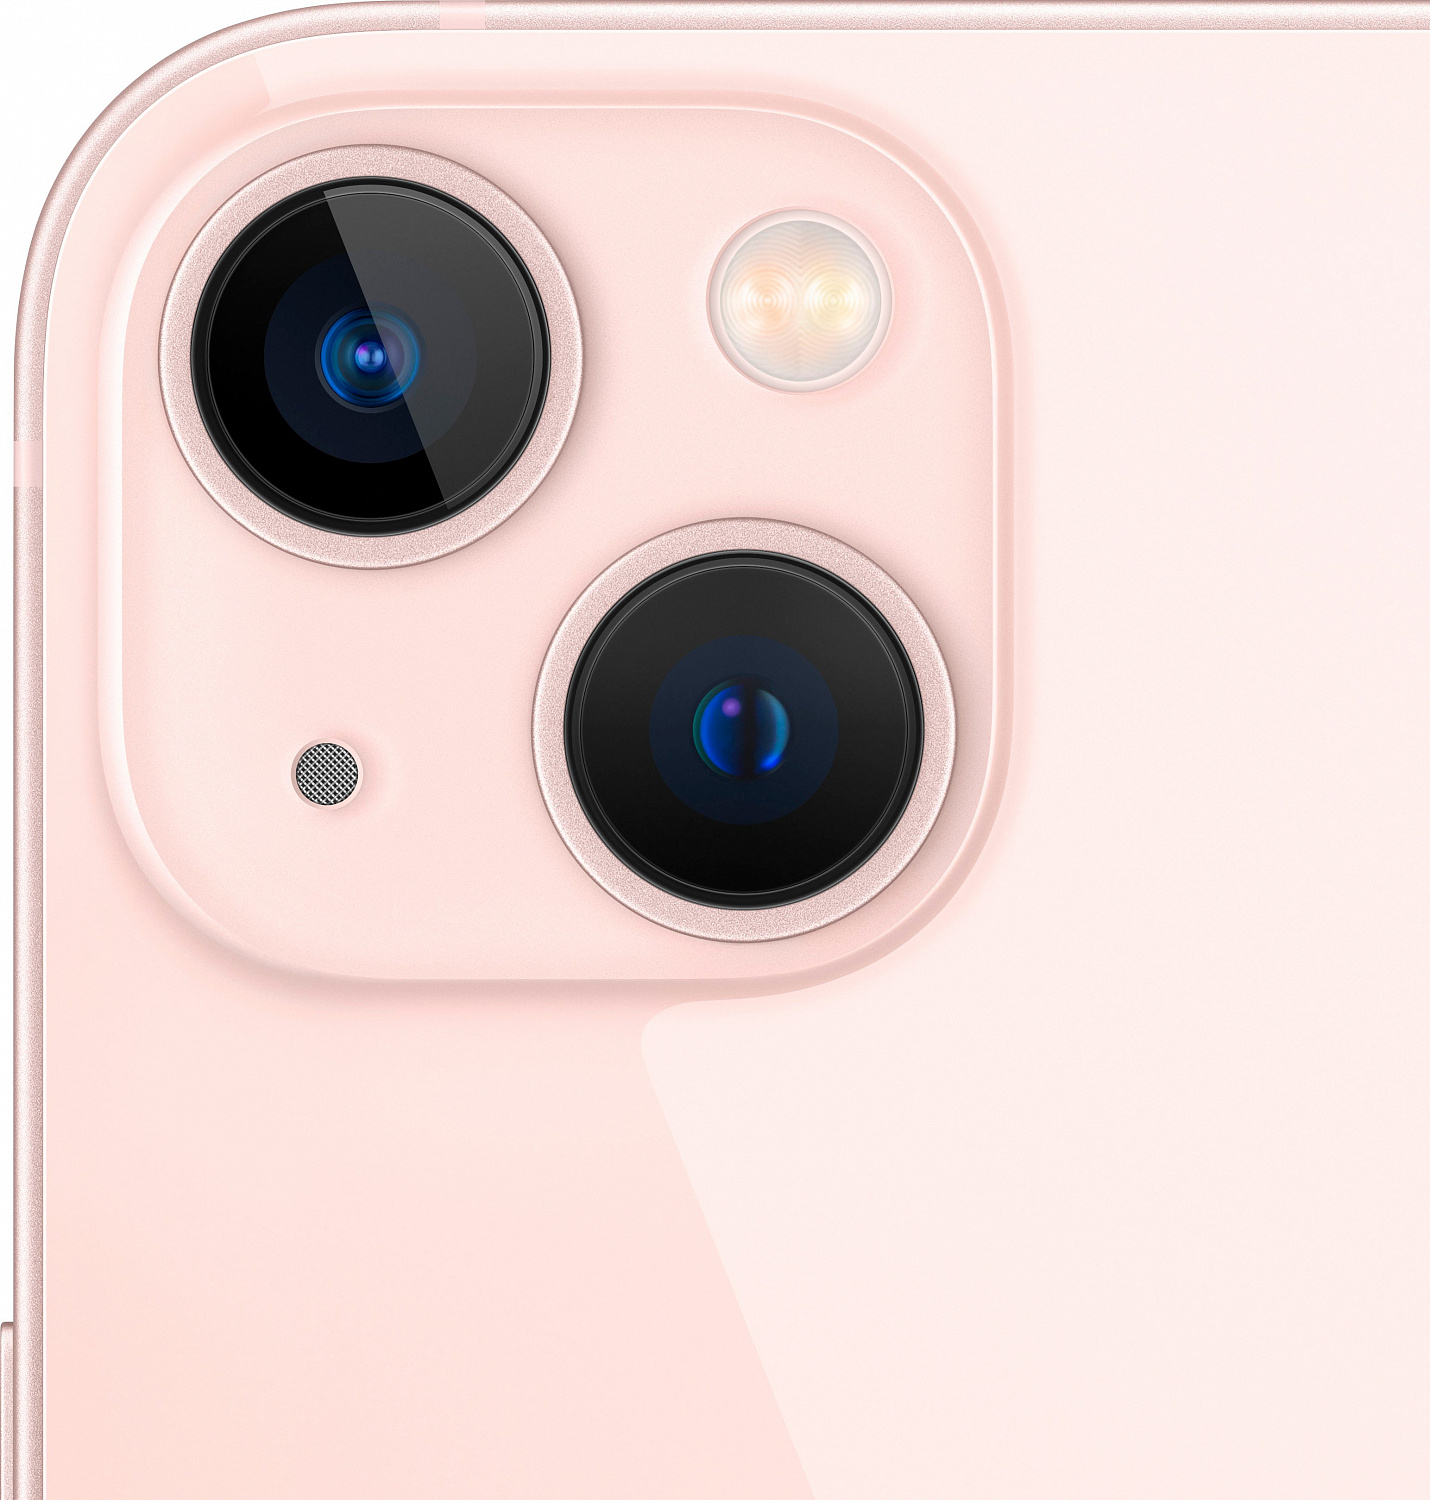 Apple iPhone 13 512GB Pink (MLQE3) - ITMag